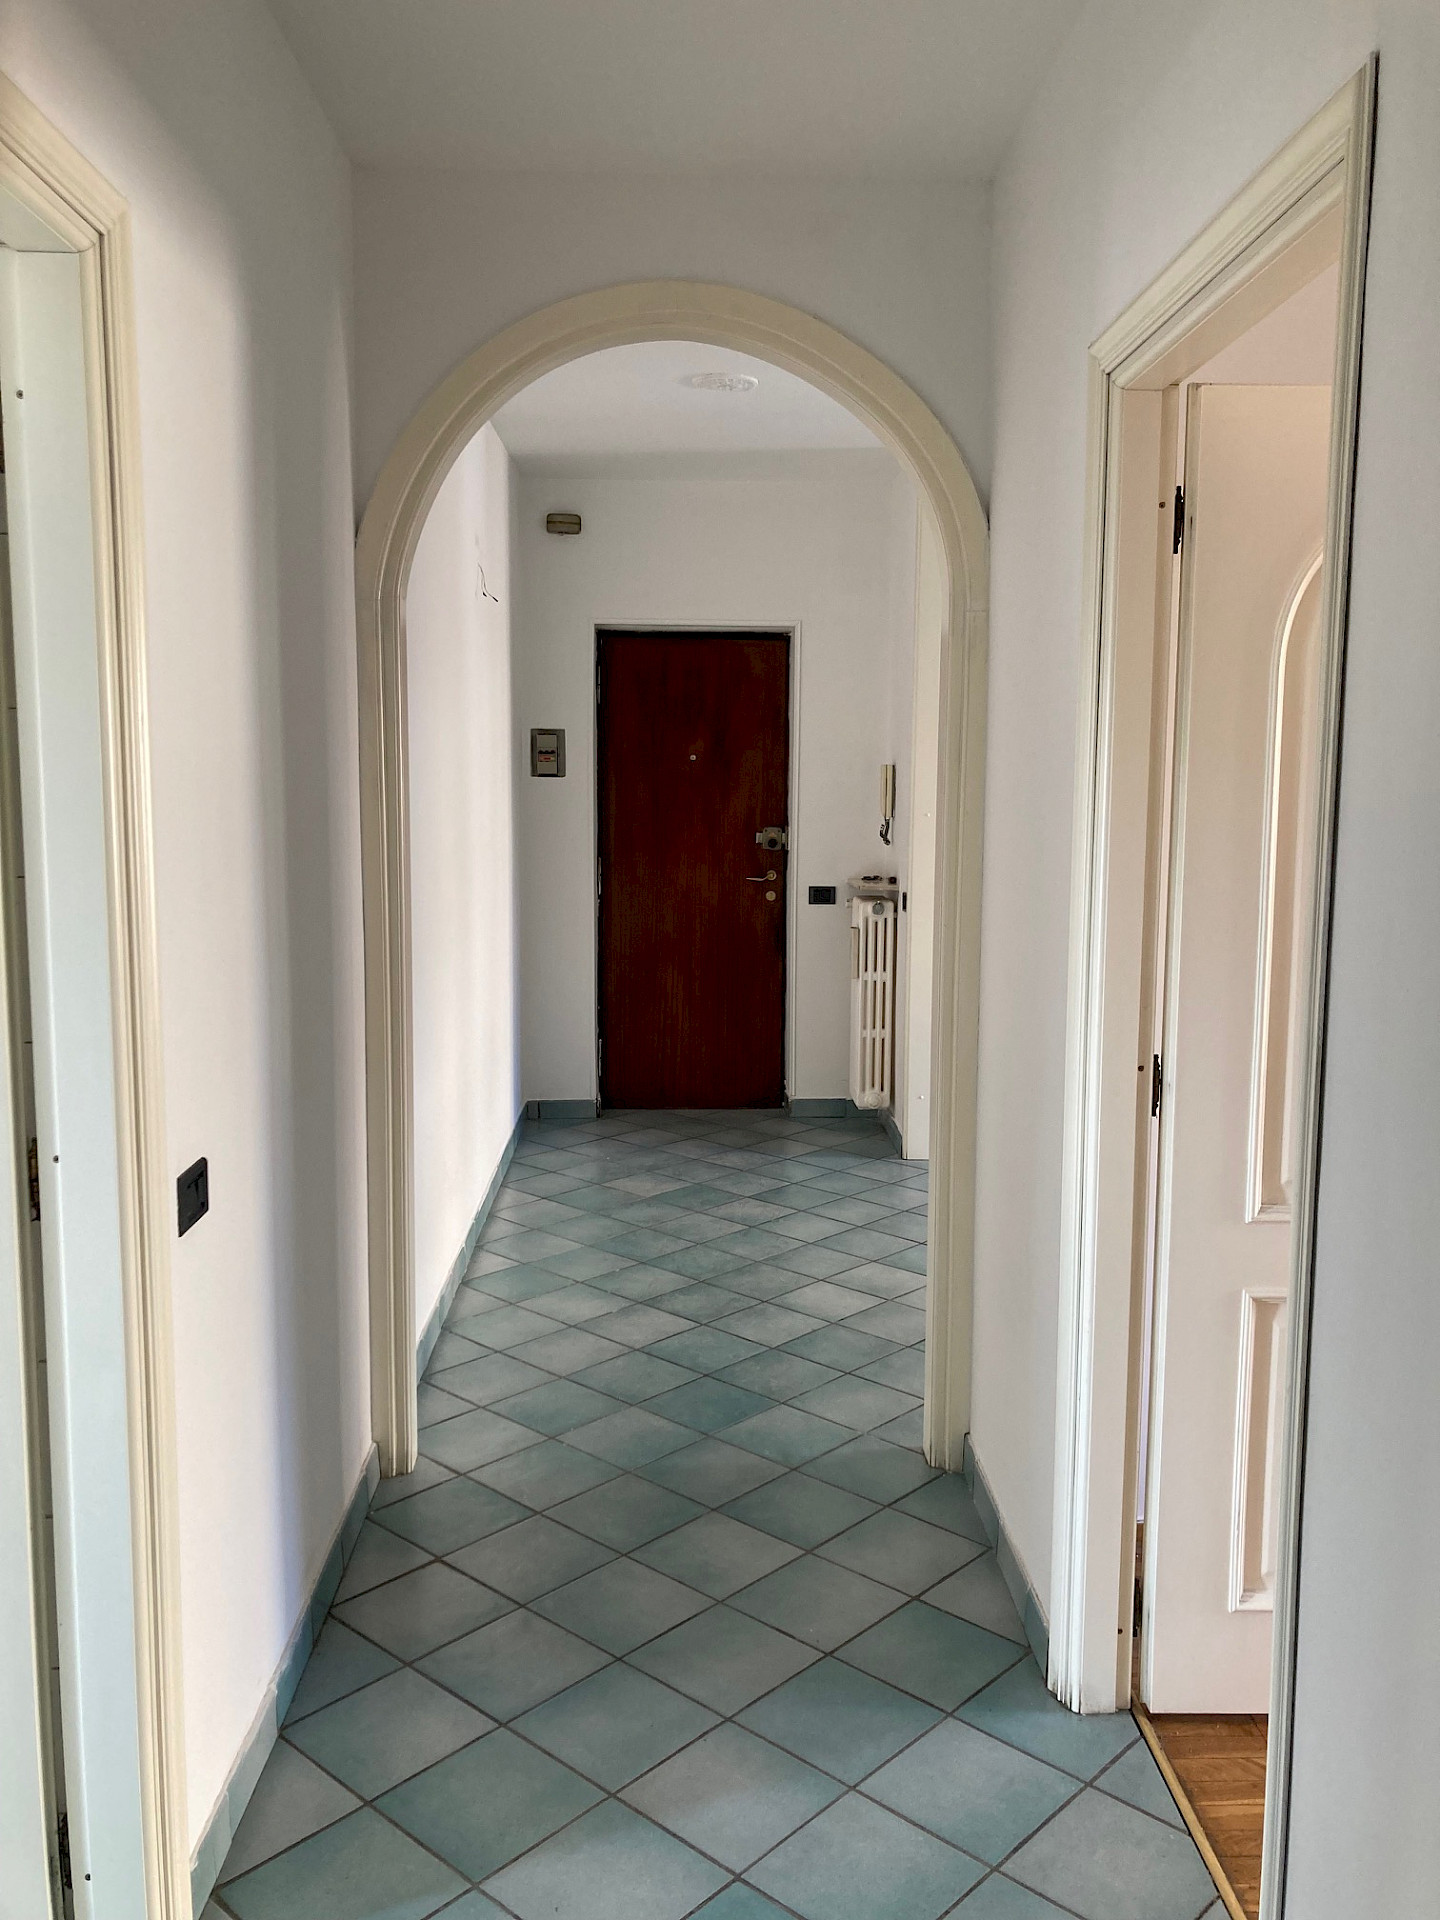 Immagine per Appartamento C.so Vercelli 168